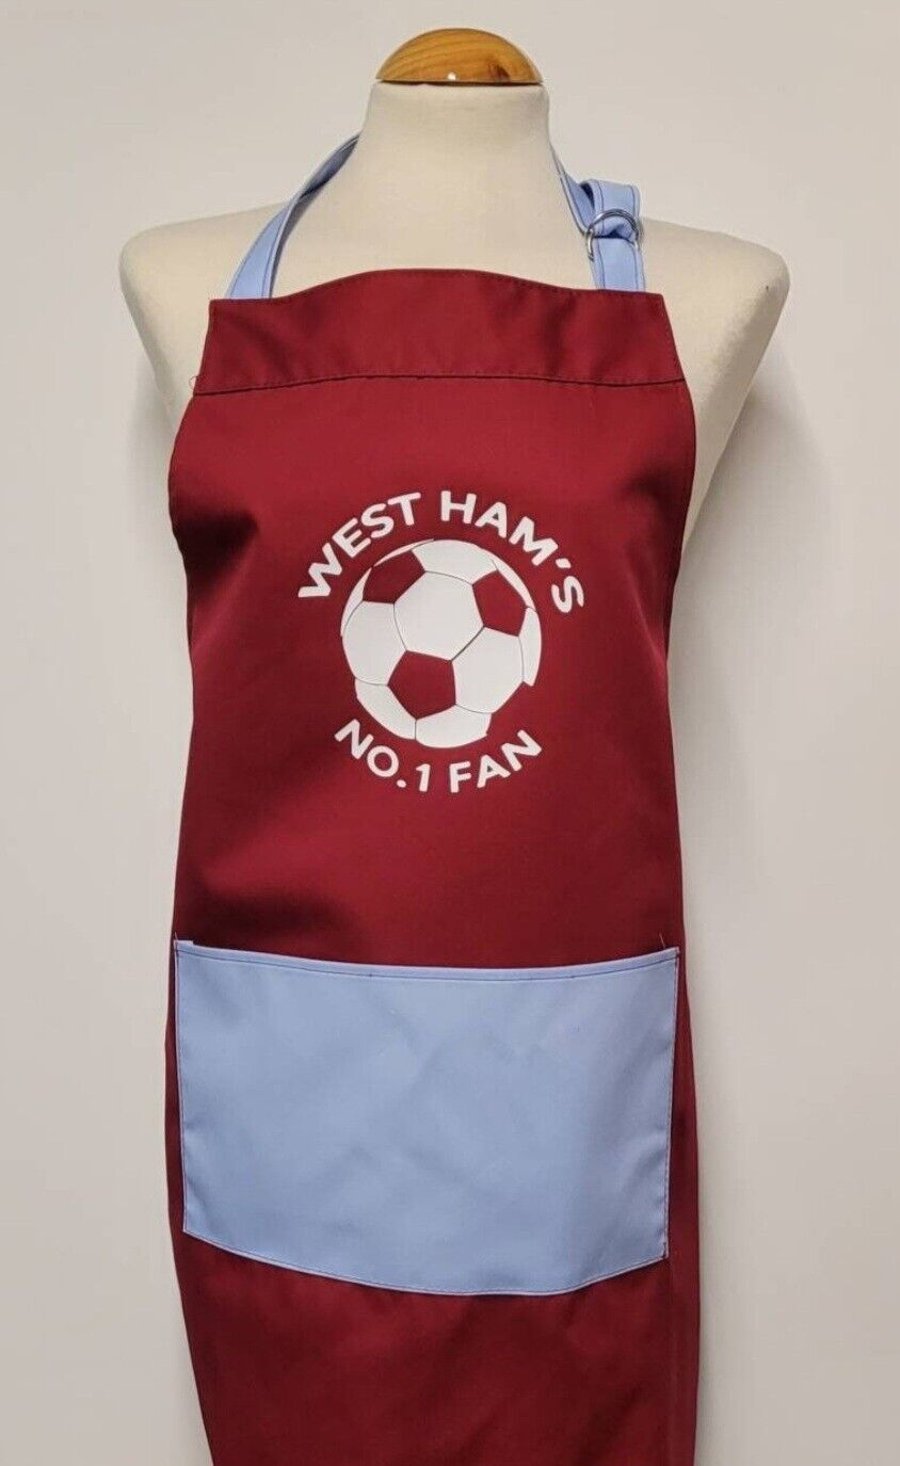 West ham - No.1 fan. Medium cotton apron 